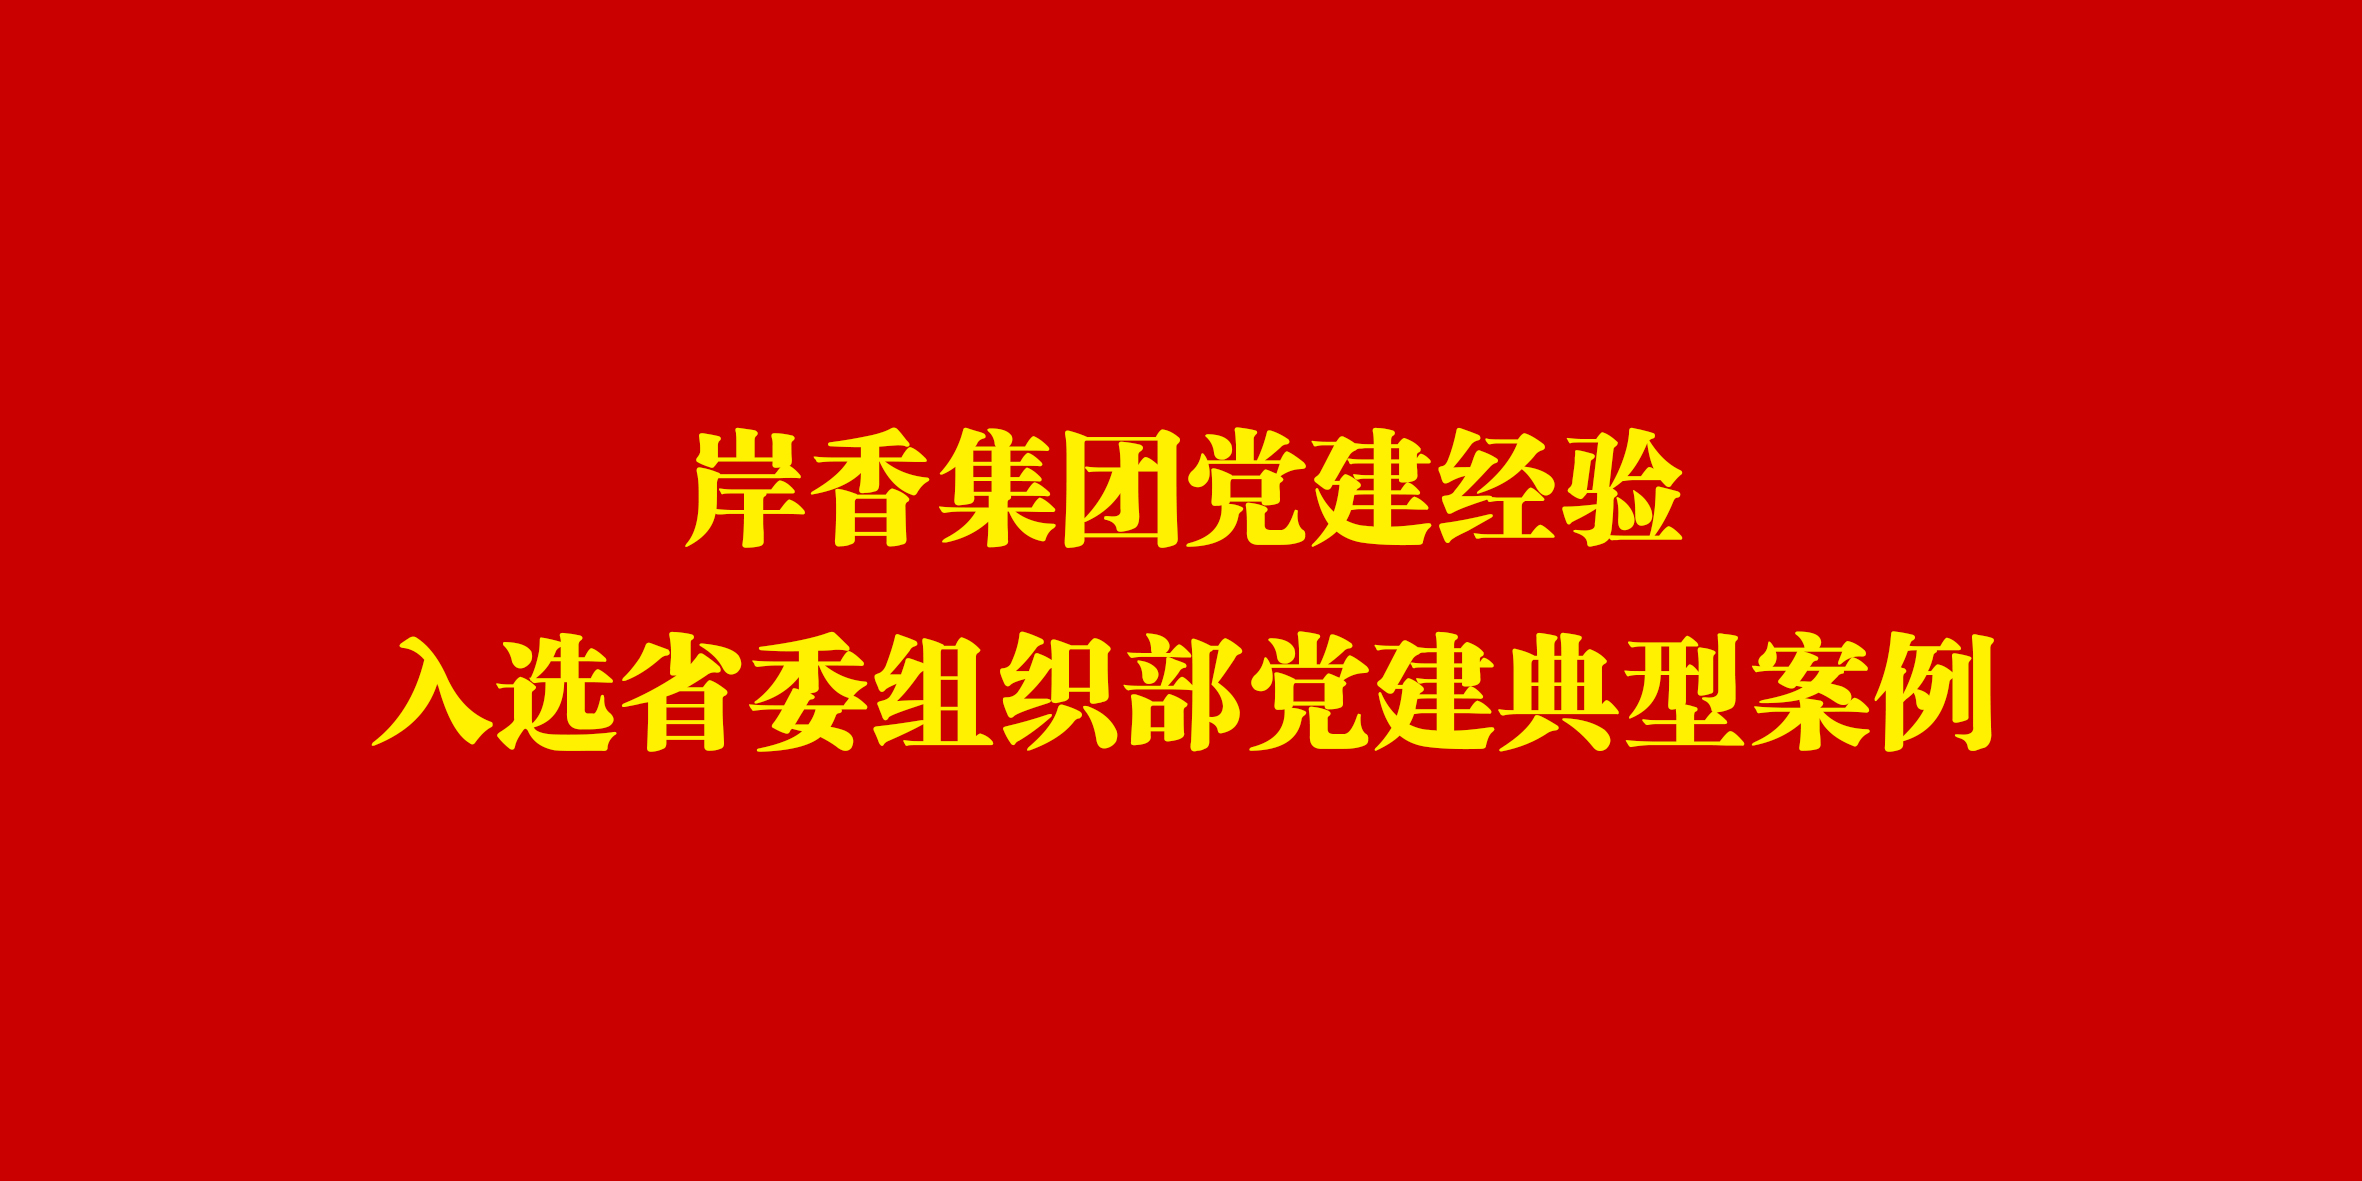 岸香集團黨建經驗入選省委組織部黨建典型案例